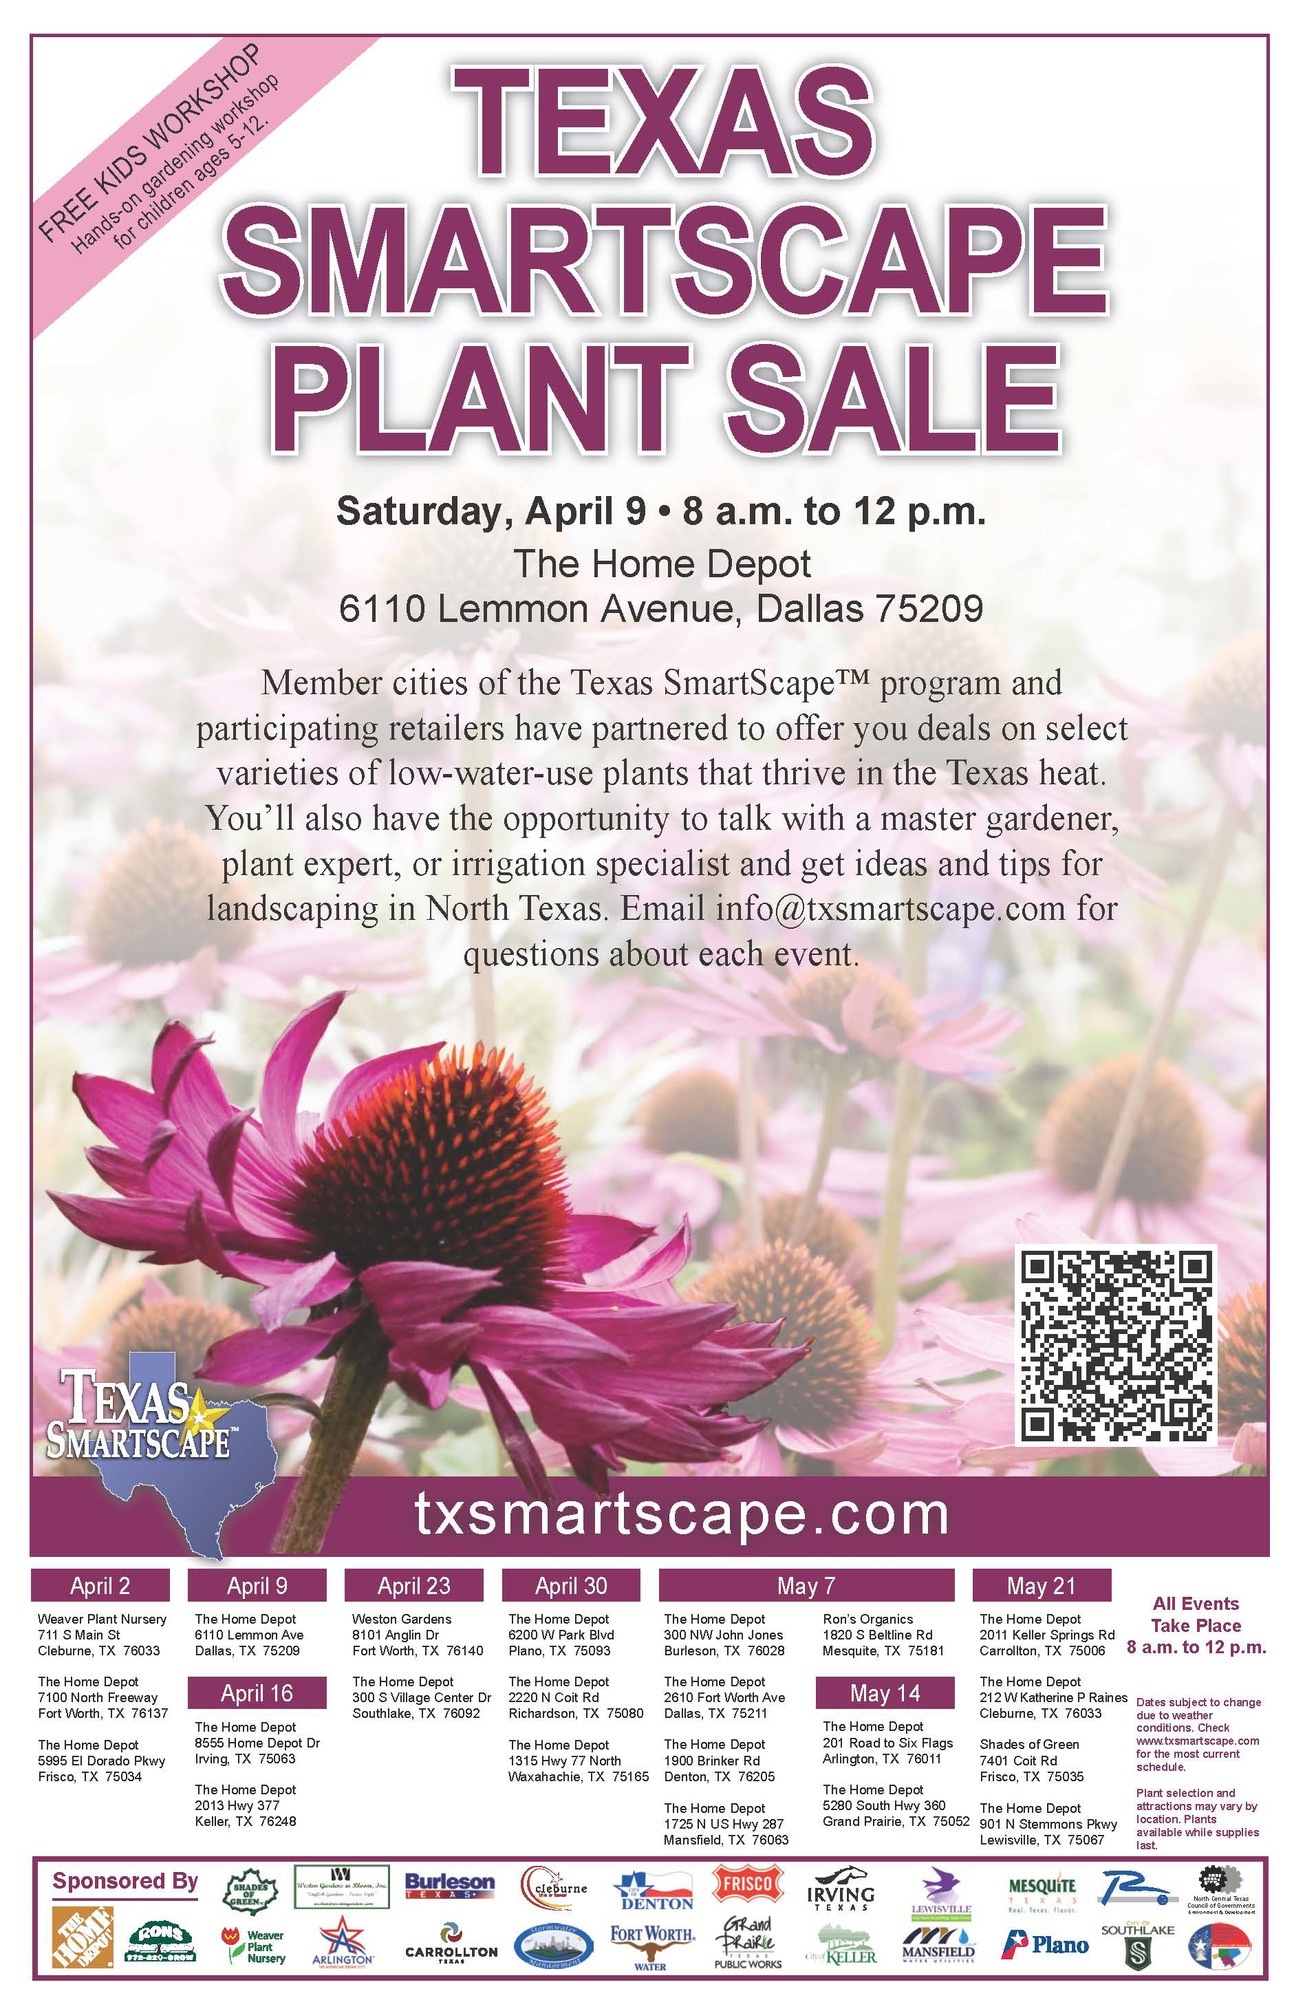 Texas SmartScape Plant Sale - Home Depot Lemmon Ave. - Sat. April 9